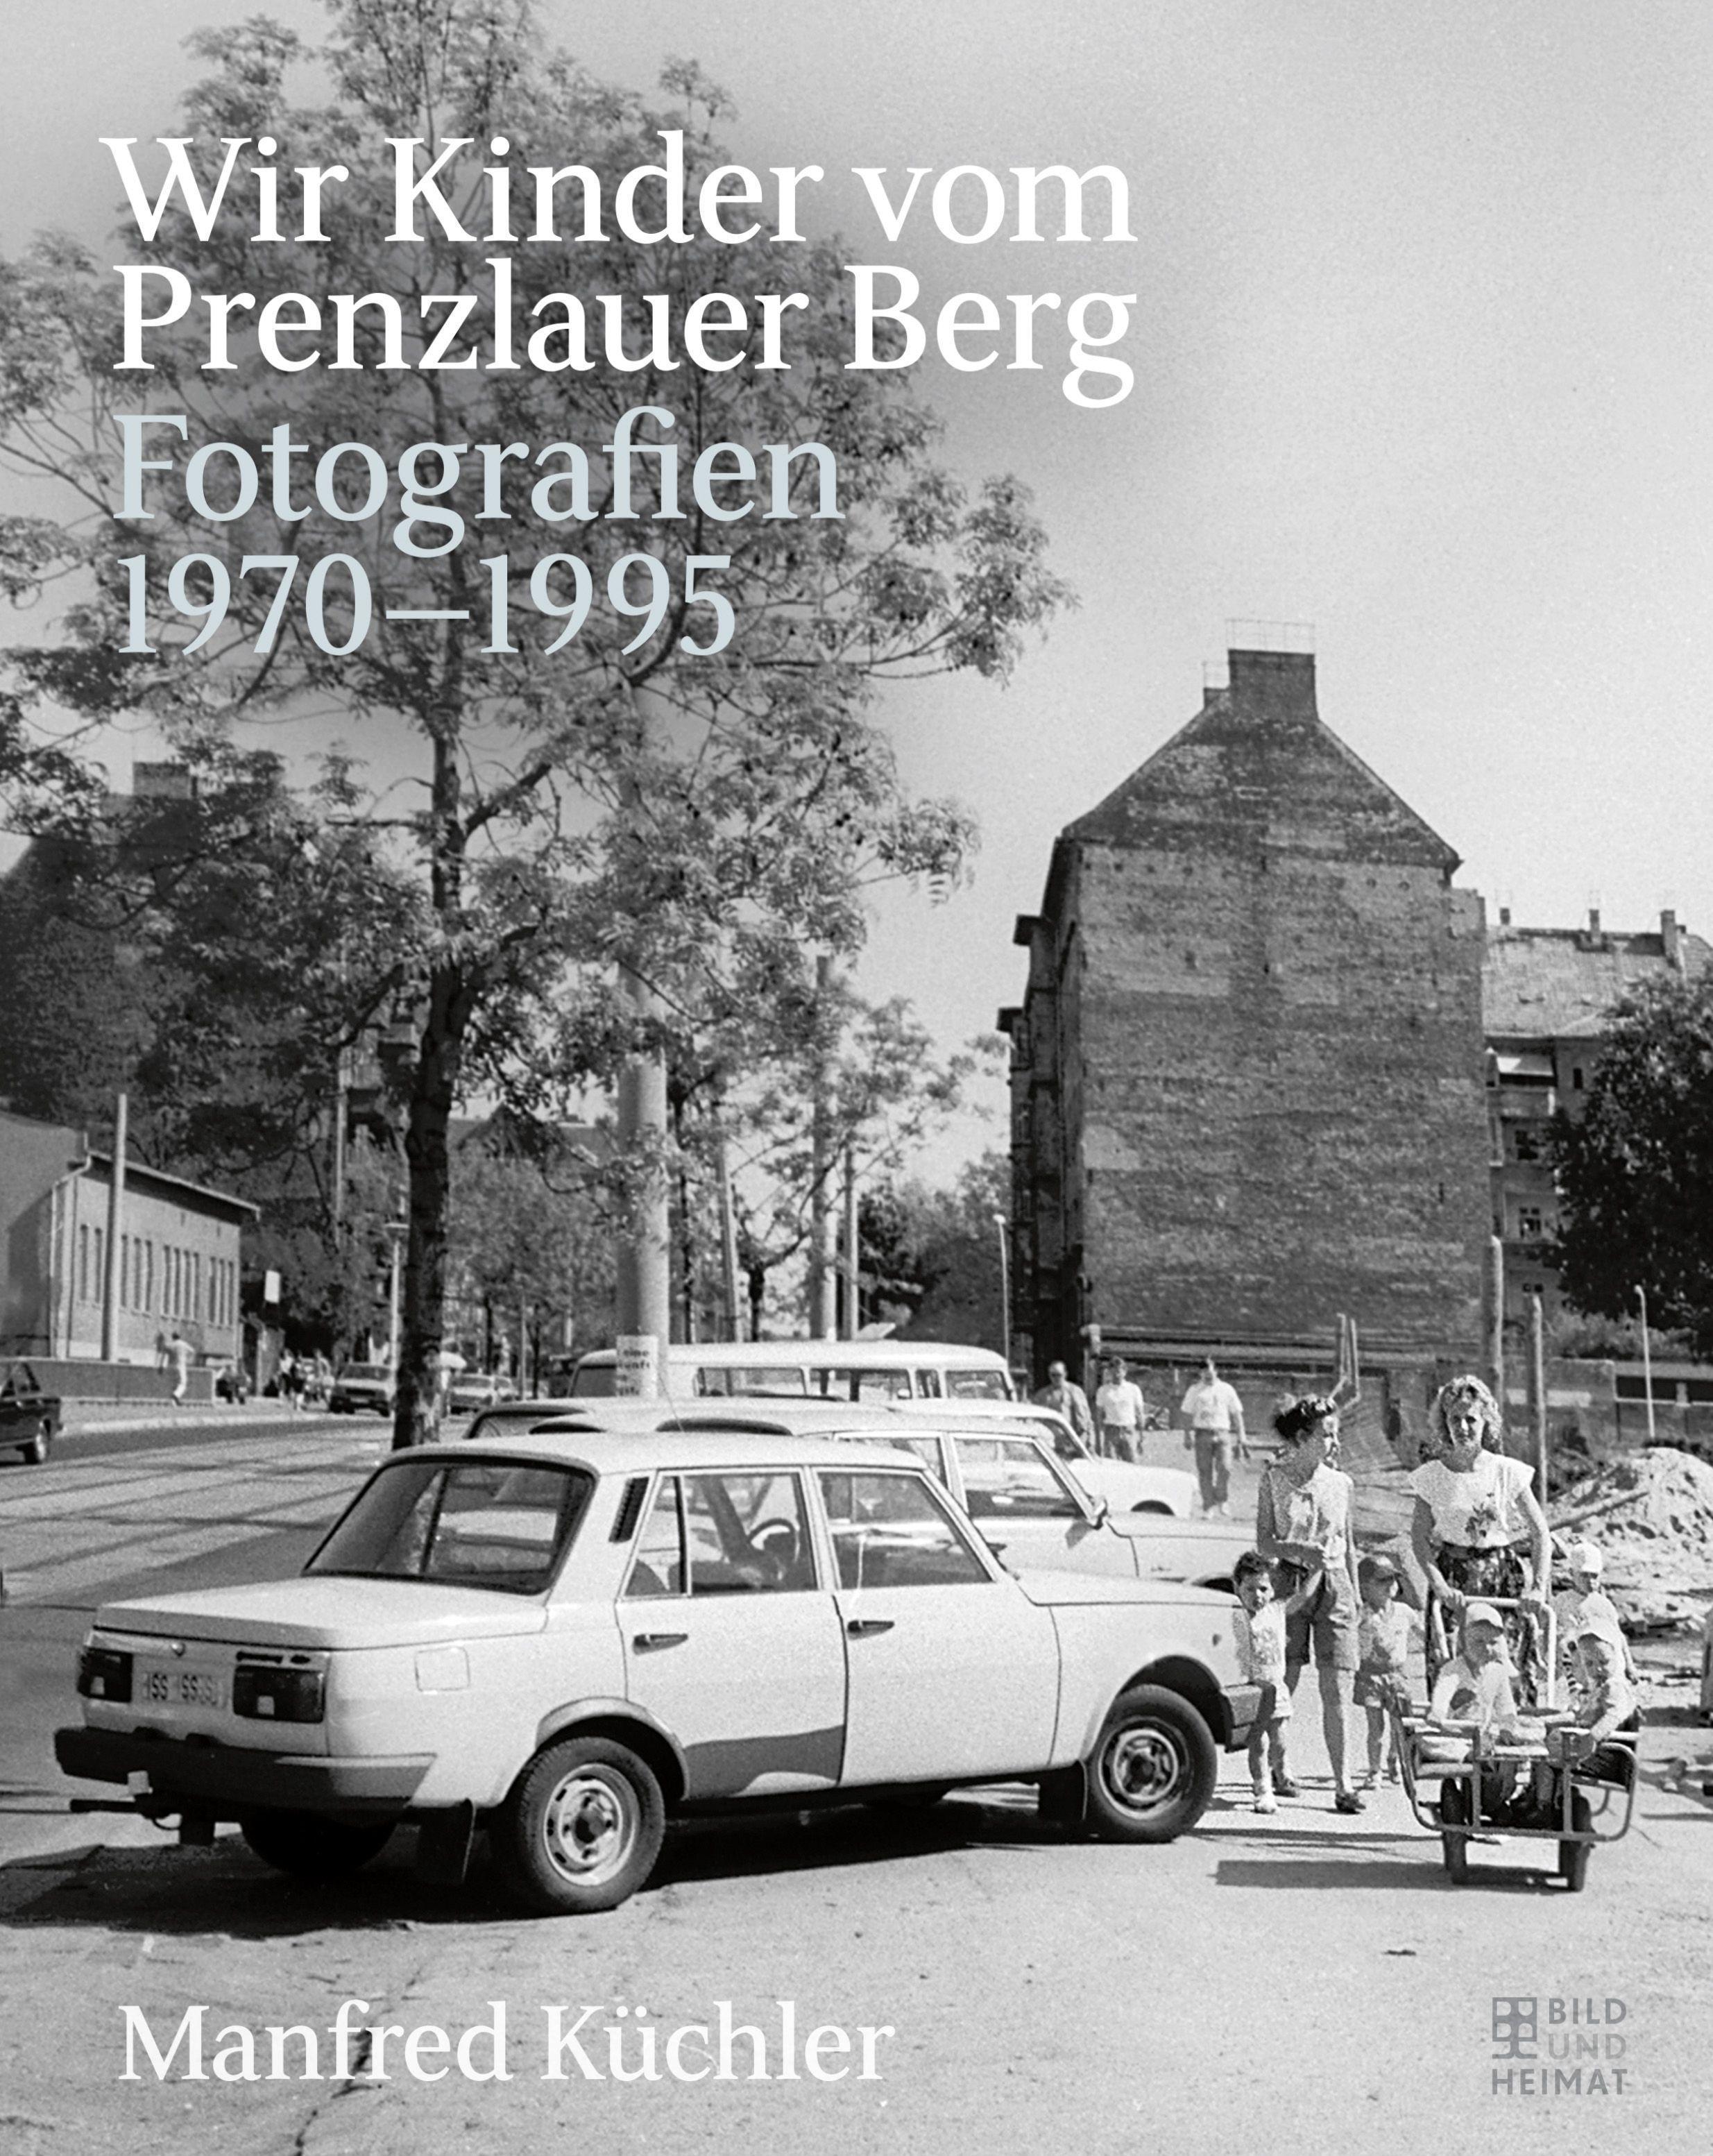 Wir Kinder vom Prenzlauer Berg / Fotografien 1970-1995 / Buch / 112 S. / Deutsch / 2020 / Bild Und Heimat Verlag / EAN 9783959581417